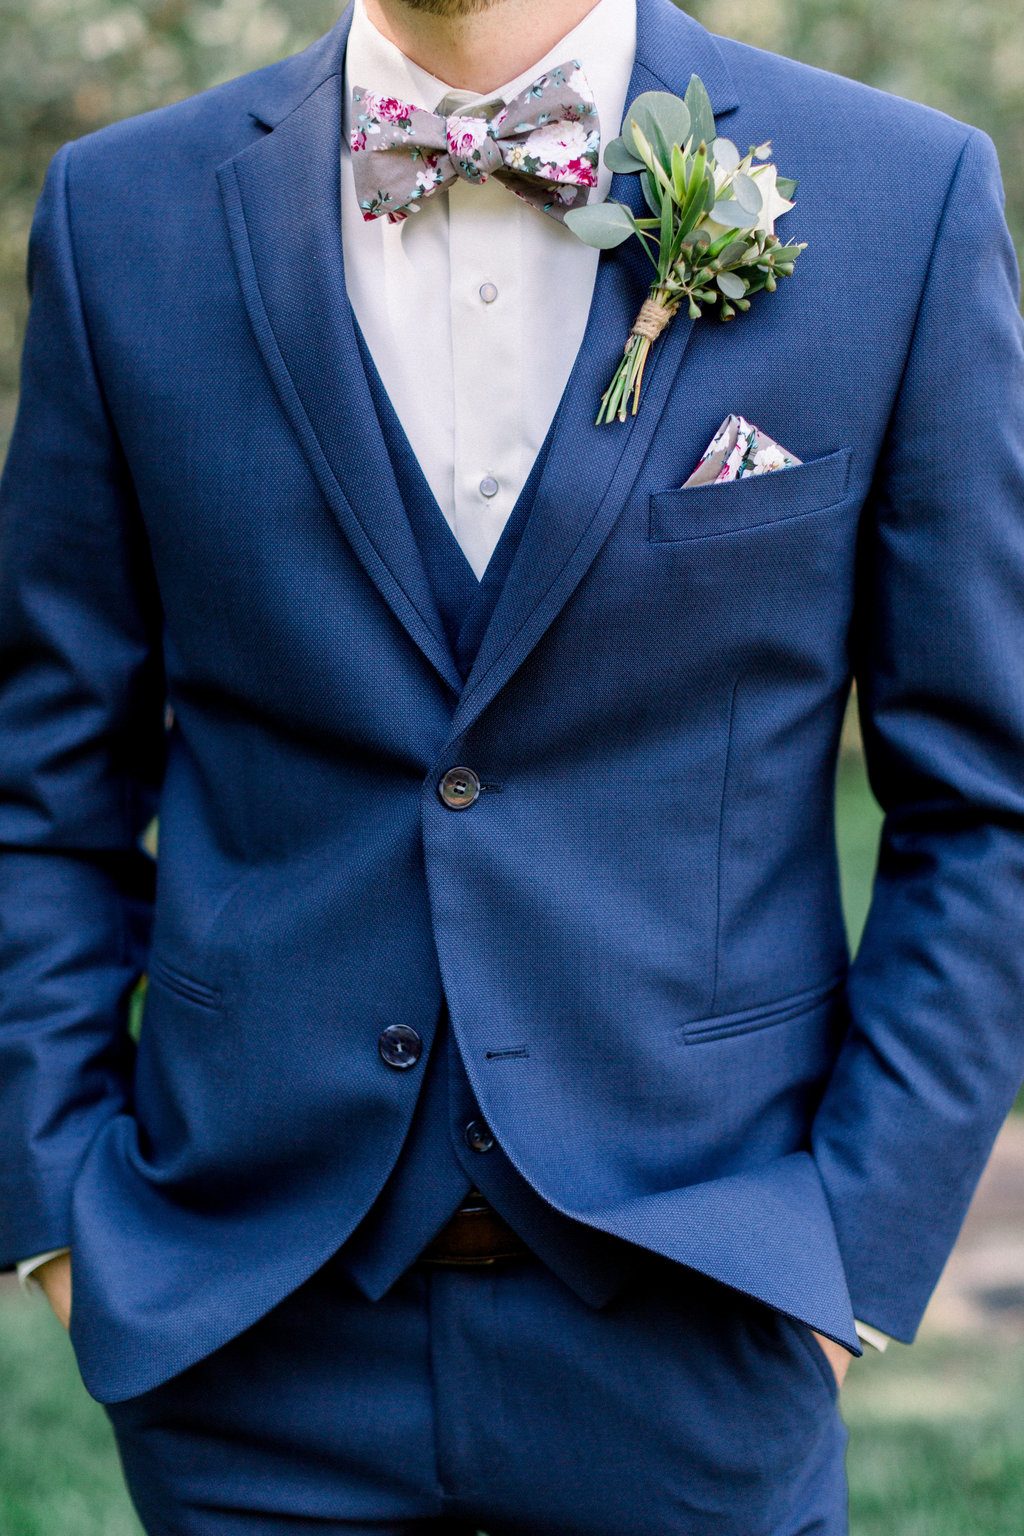 øjeblikkelig kronblad i tilfælde af How To Choose the Right Groom Accessories for Your Suit ⋆ Ruffled